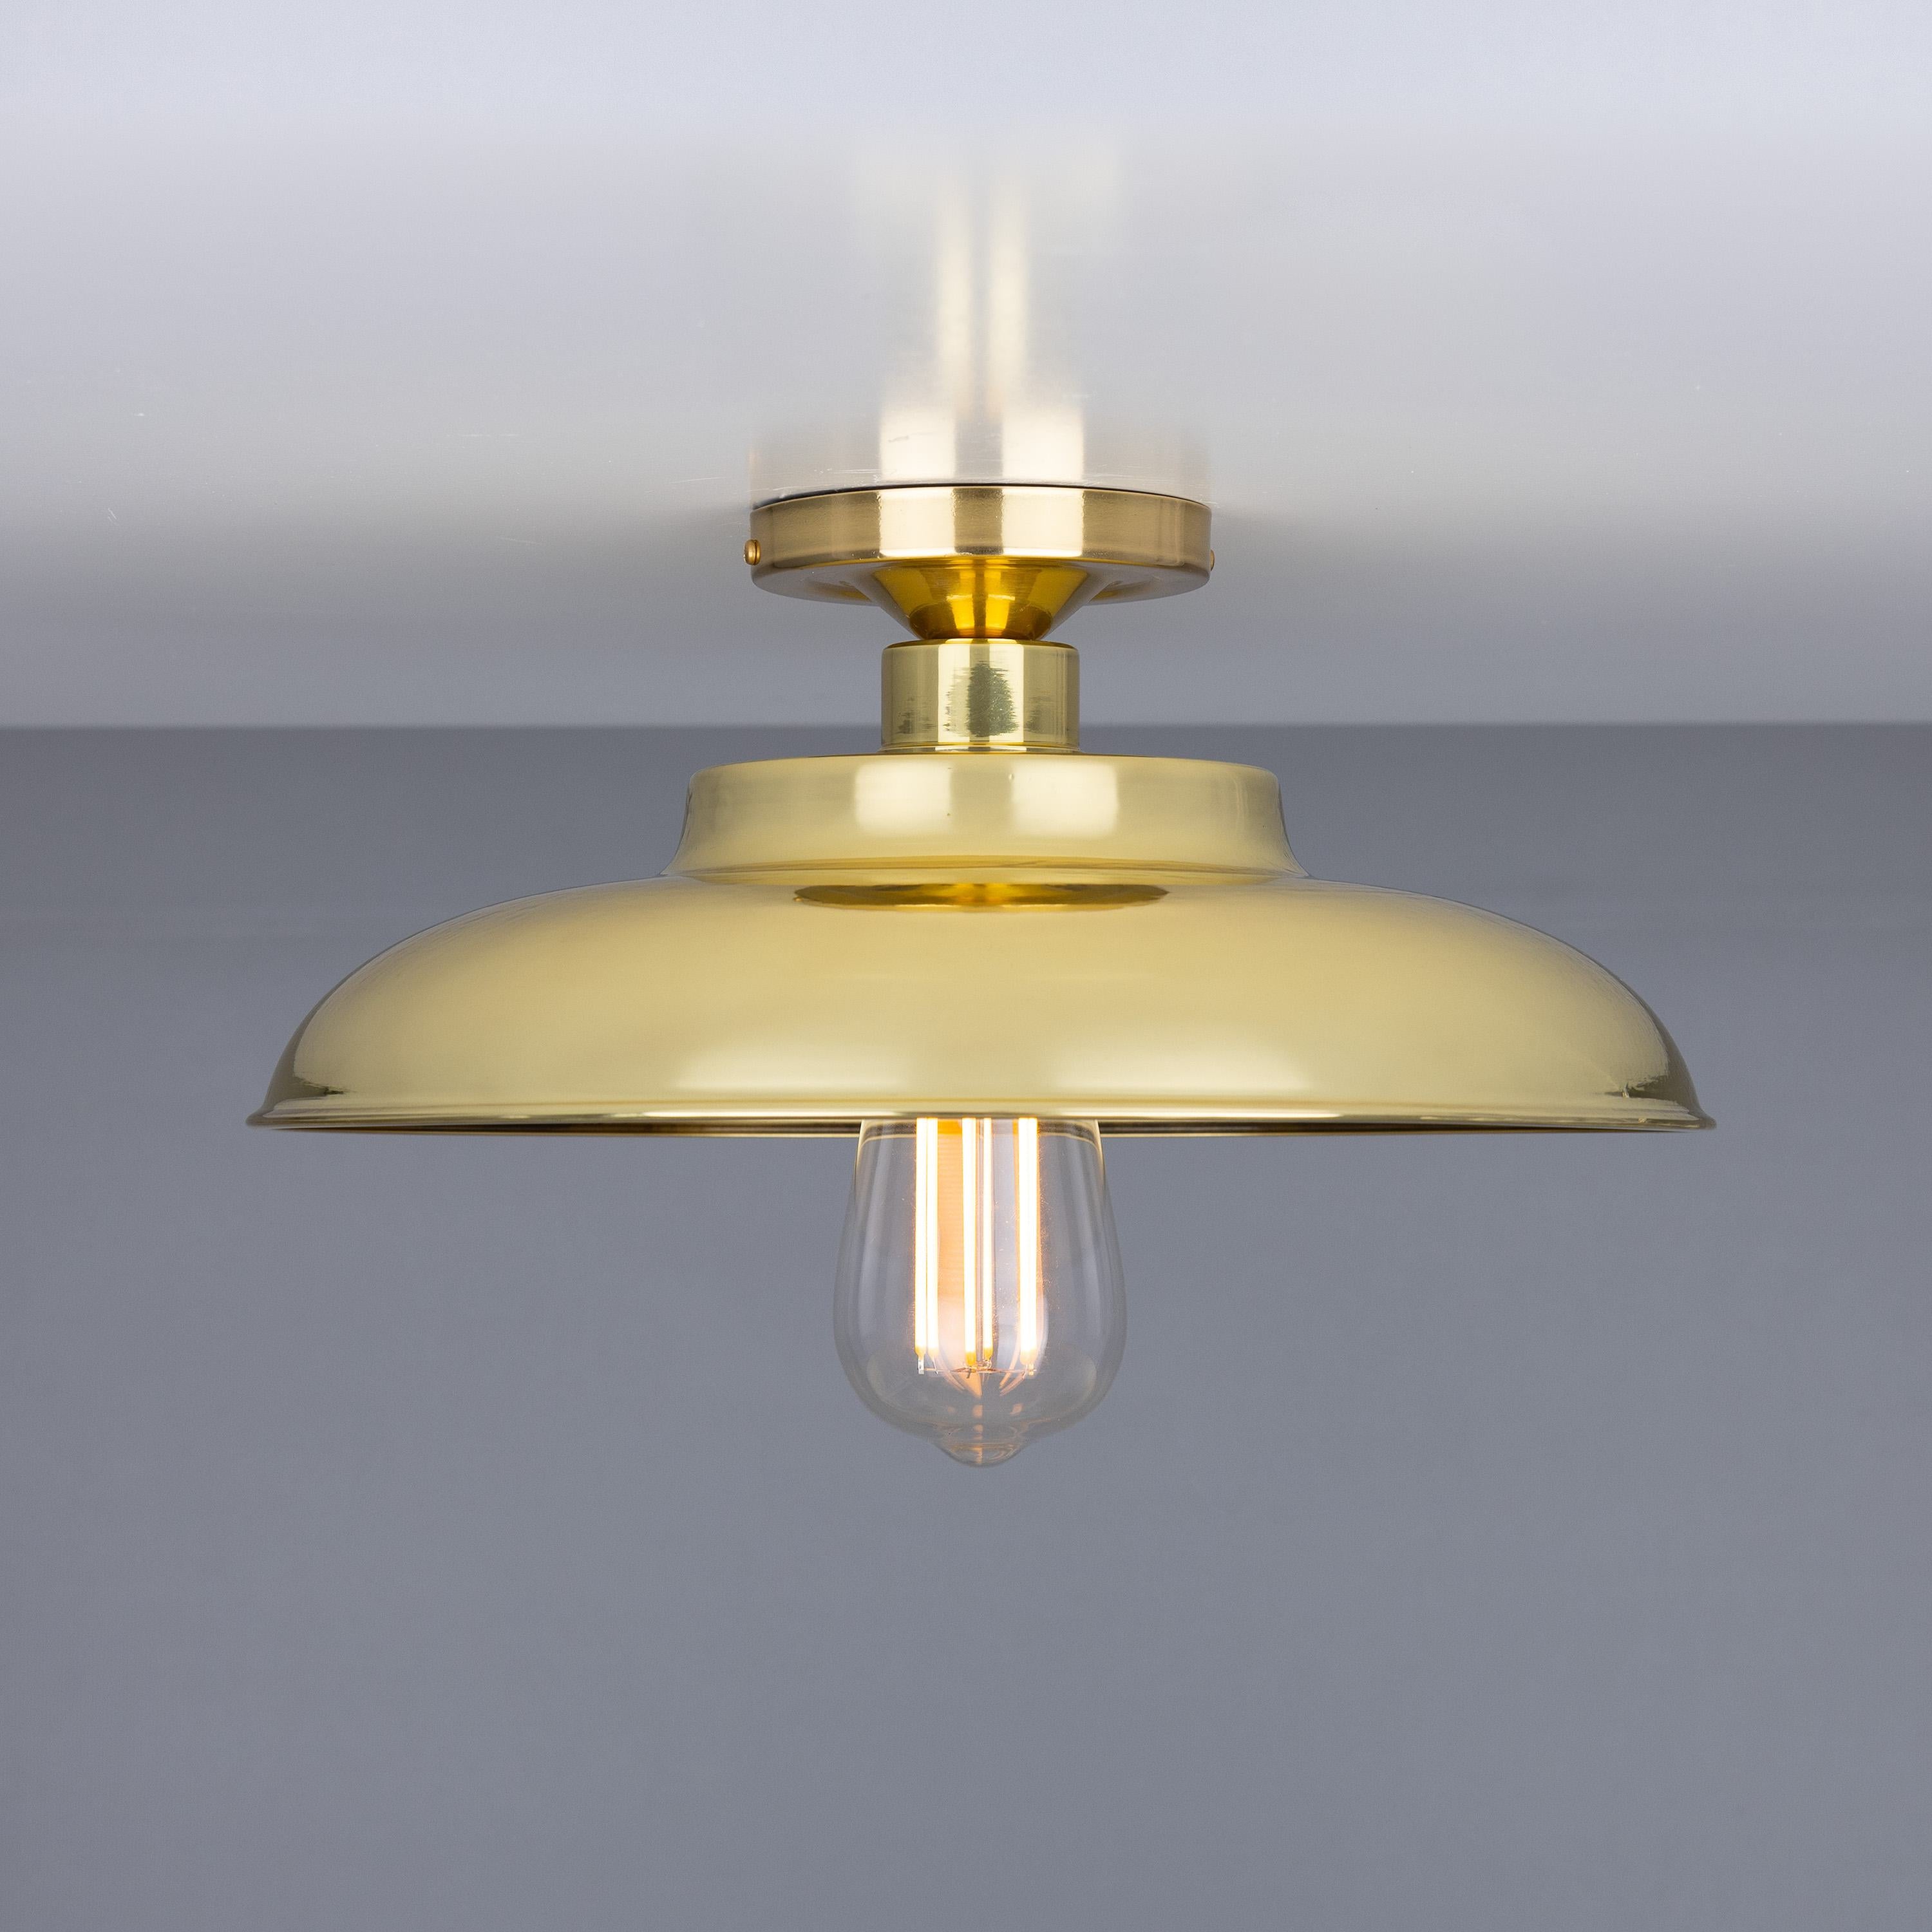 Mullan Lighting - Mullan Lighting , Brass - Union Lighting Luminaires Decor  — Union Lighting & Decor